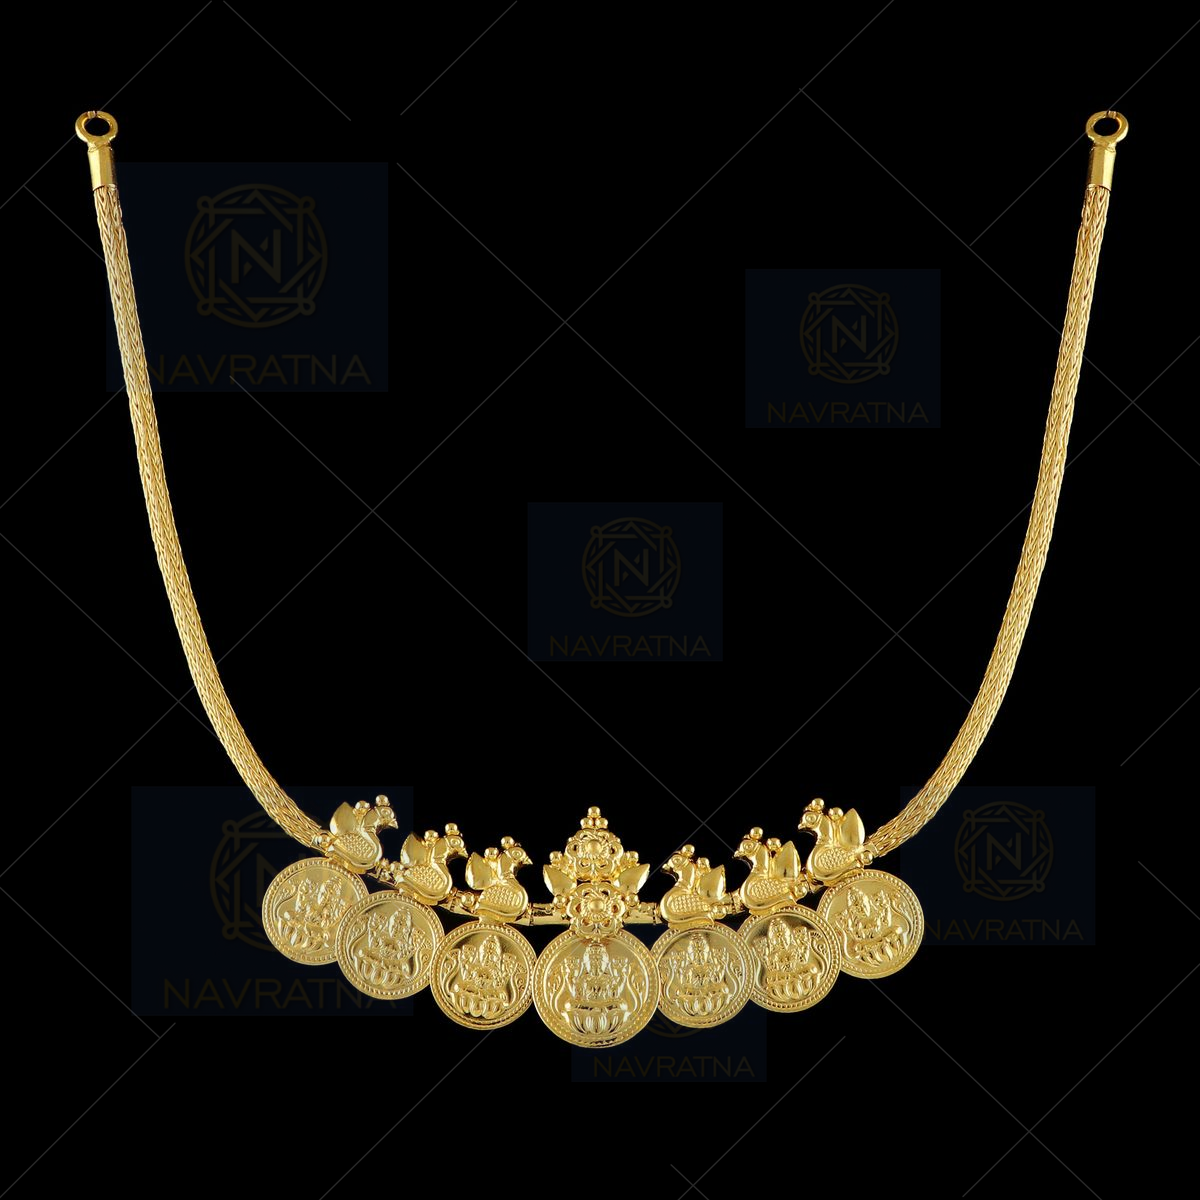 Aquarius Gold Zodiac Coin Necklace